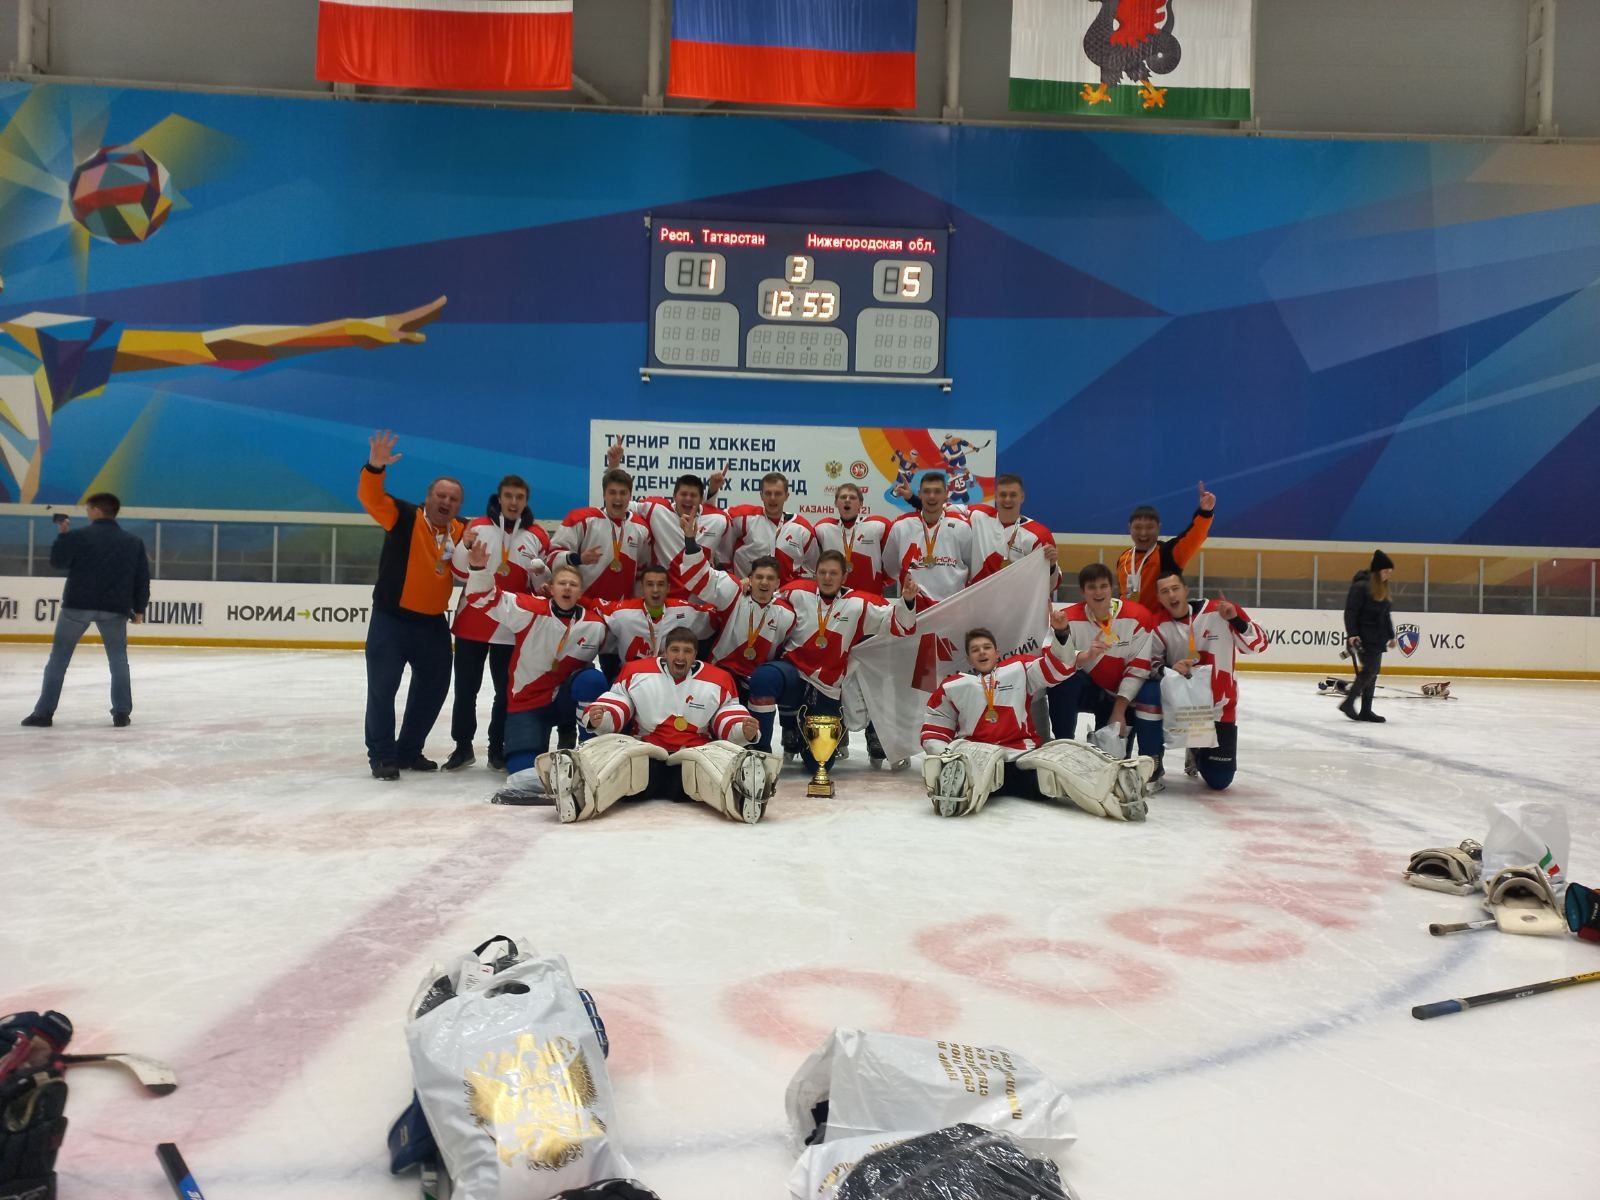 Студенты Мининского включены в состав сборной Нижегородской области по хоккею 